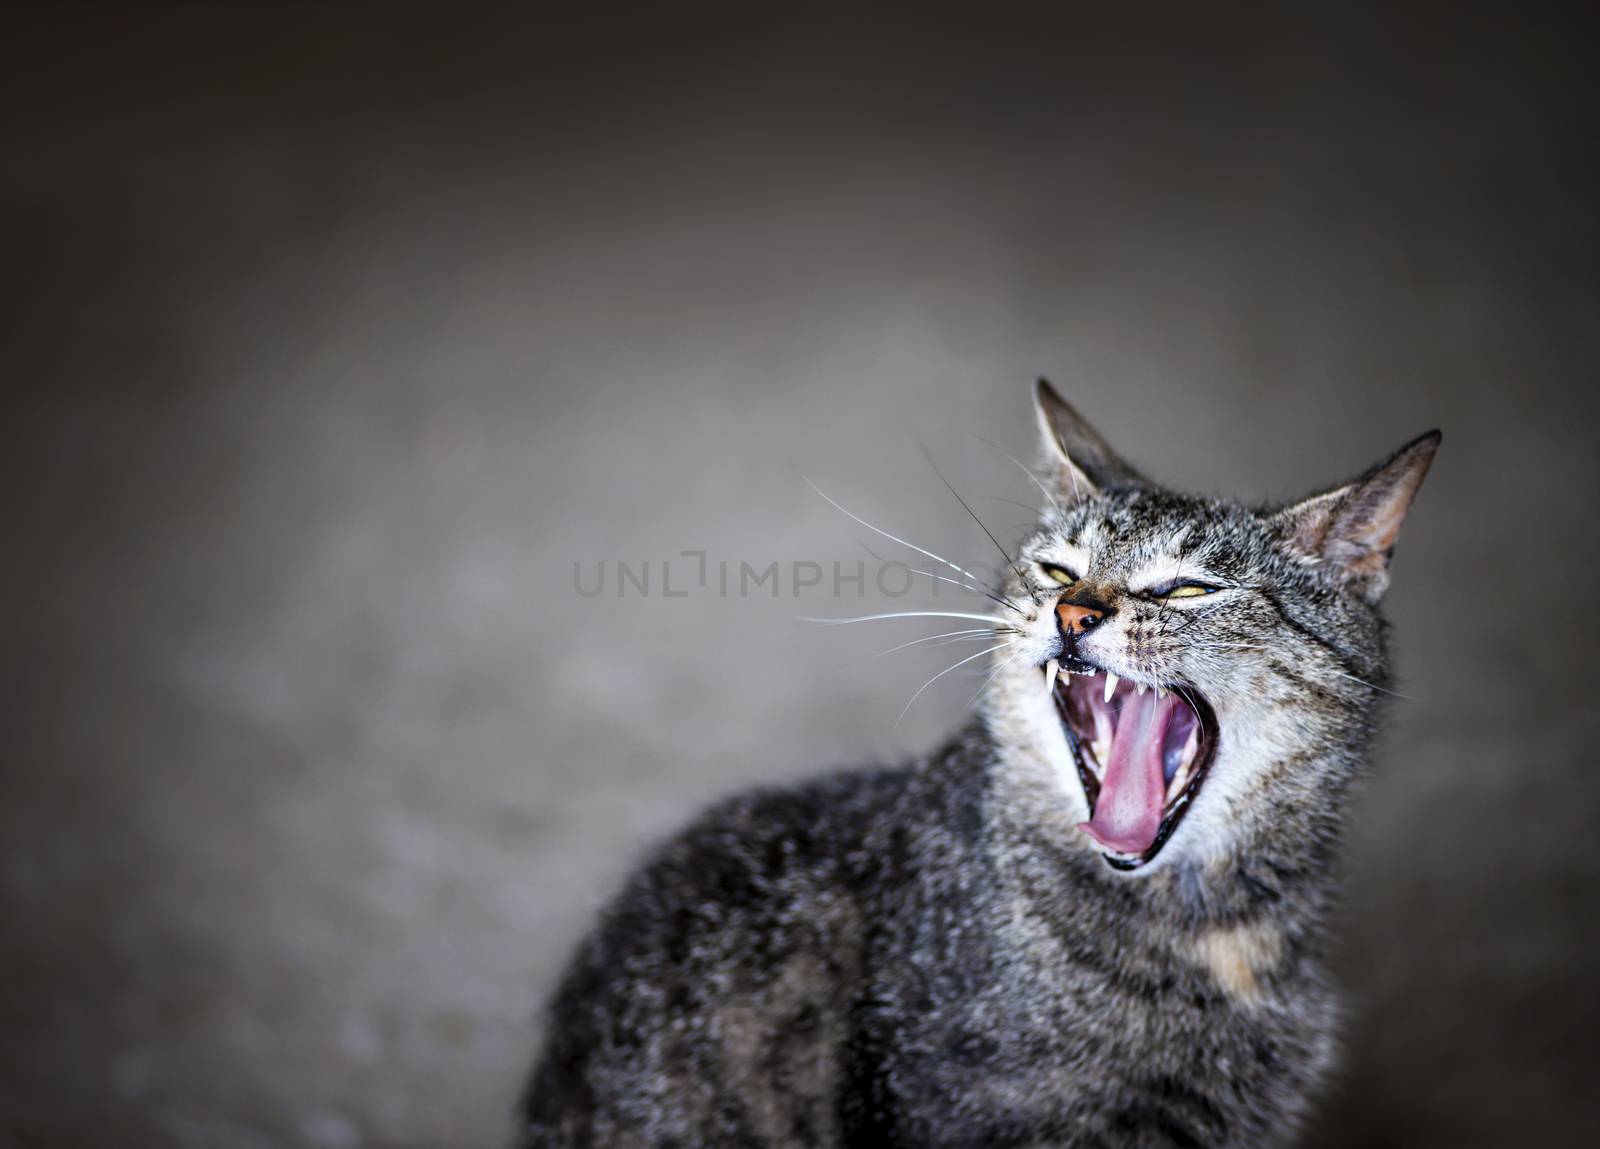 Yawning cat by elenathewise